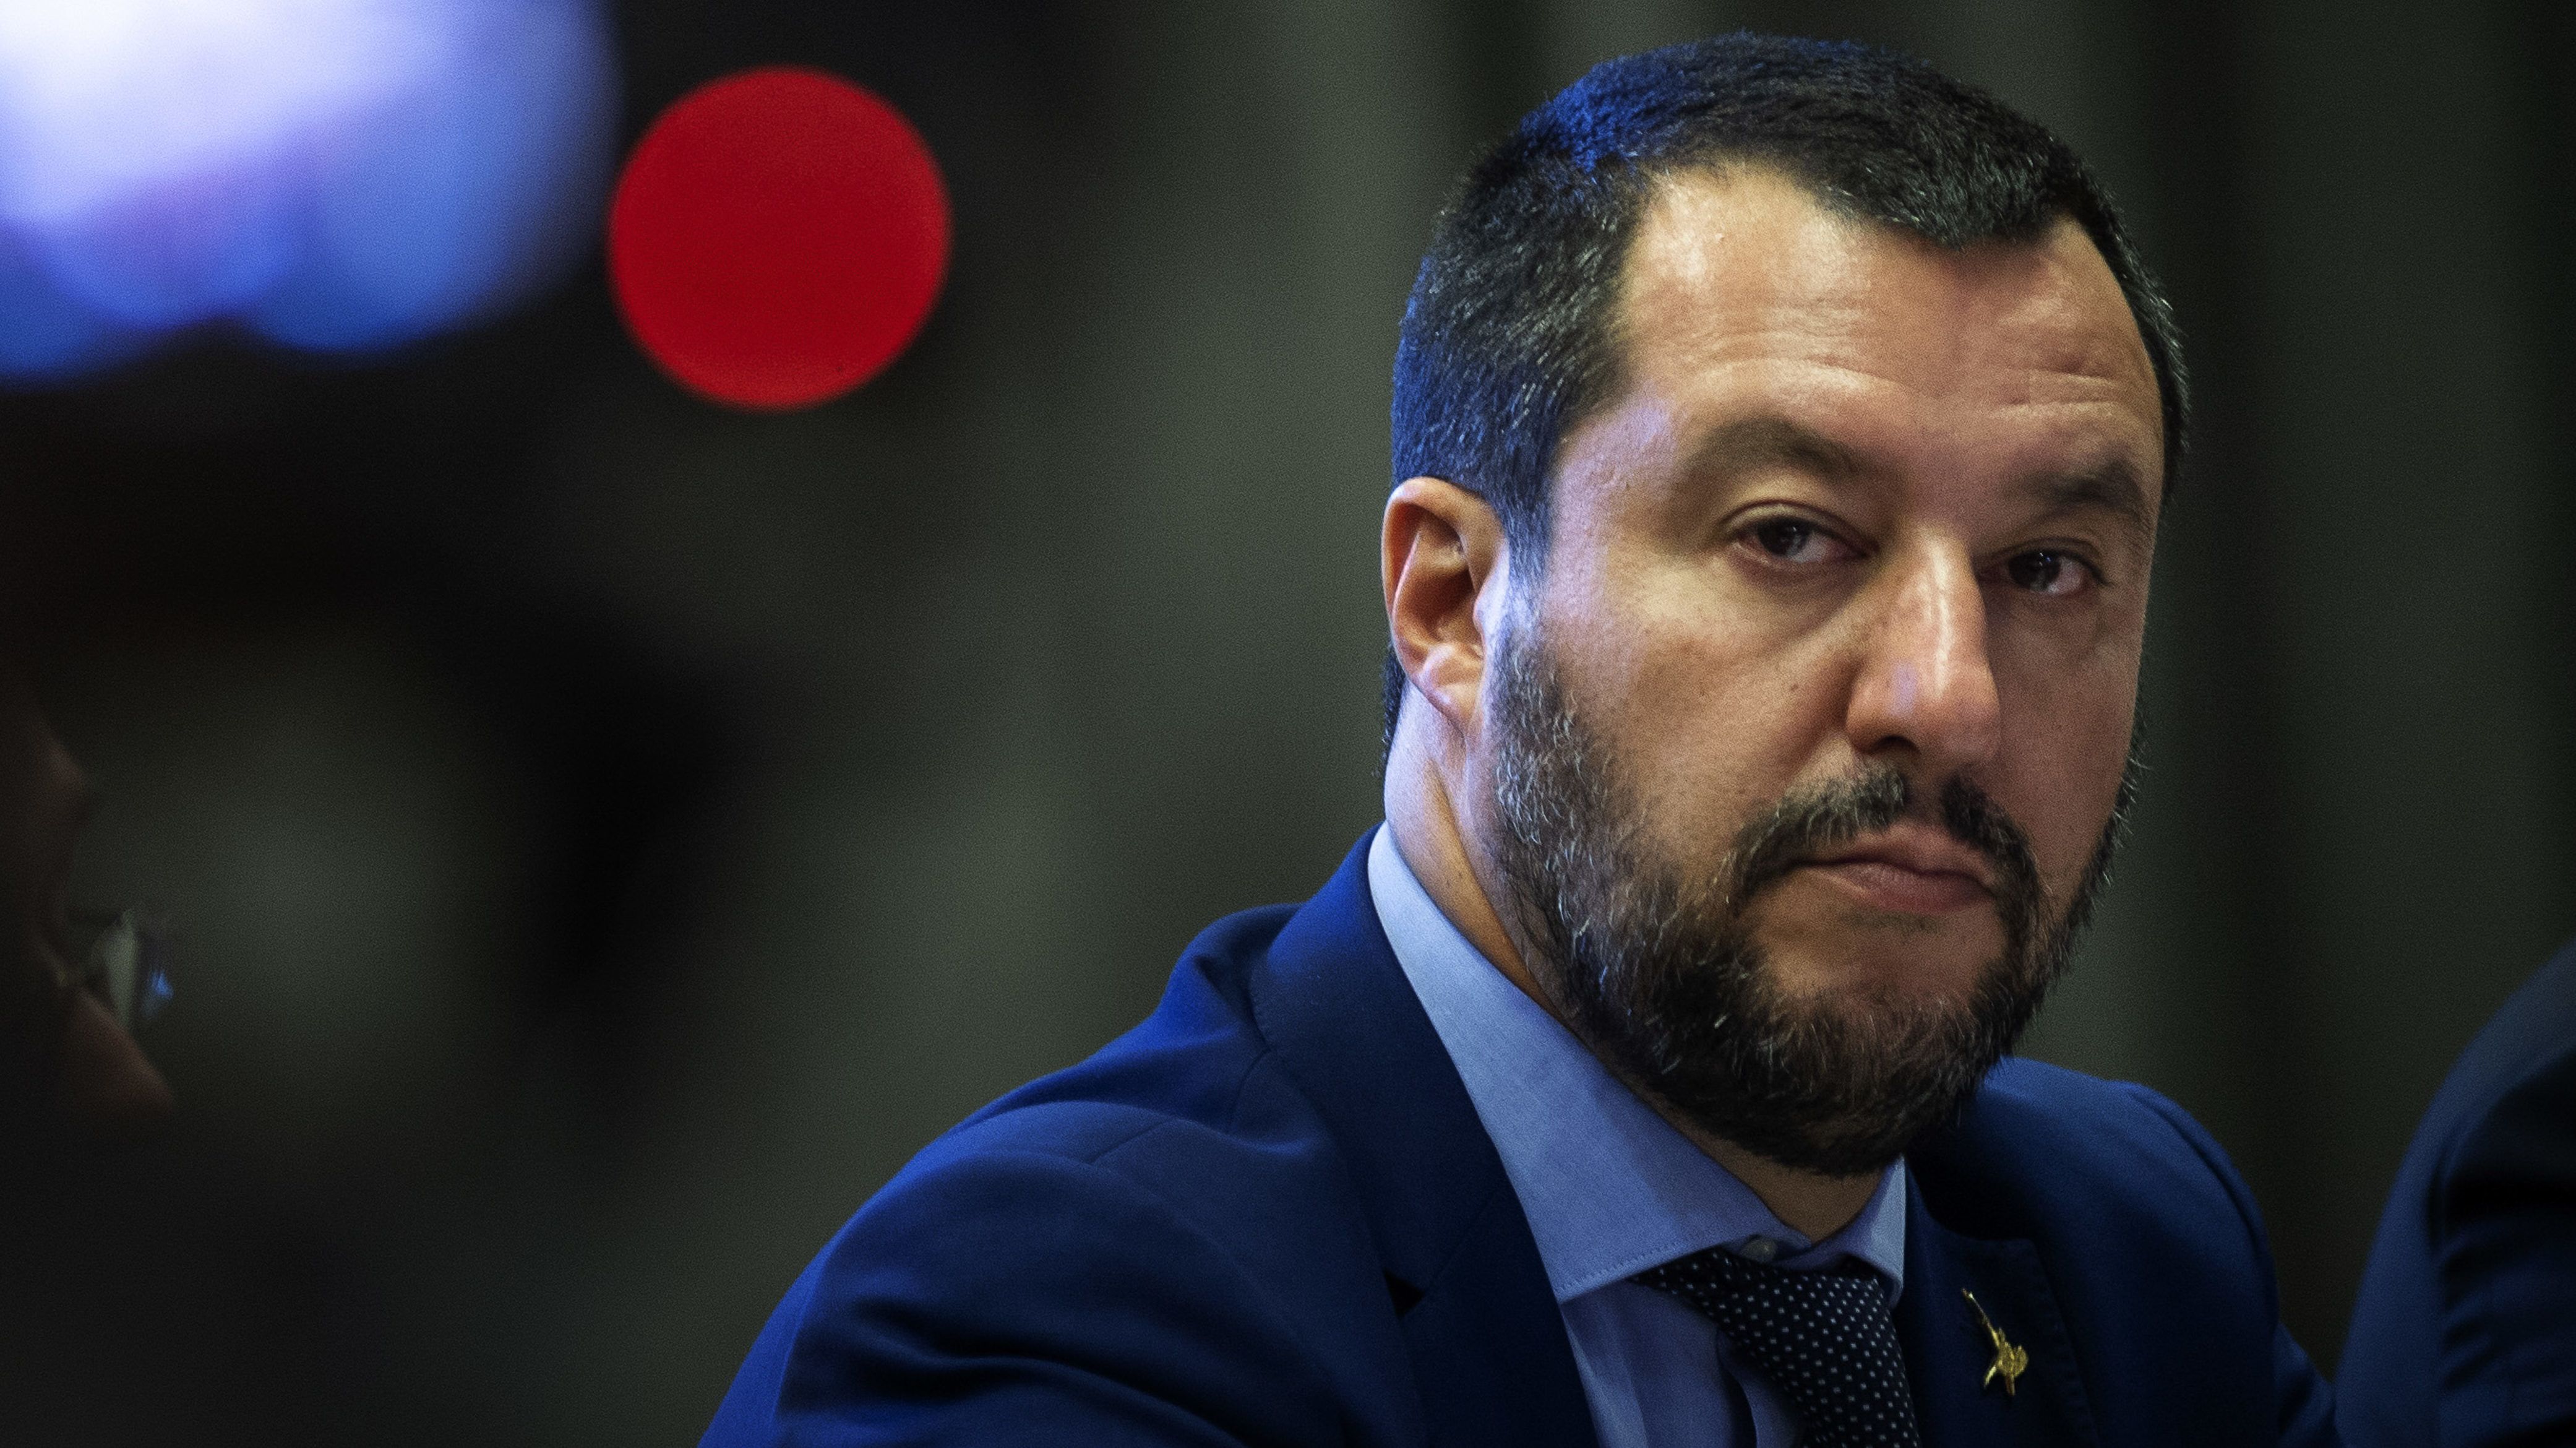 Matteo Salvininek nem tetszik Richard Gere menekülteket támogató magánakciója